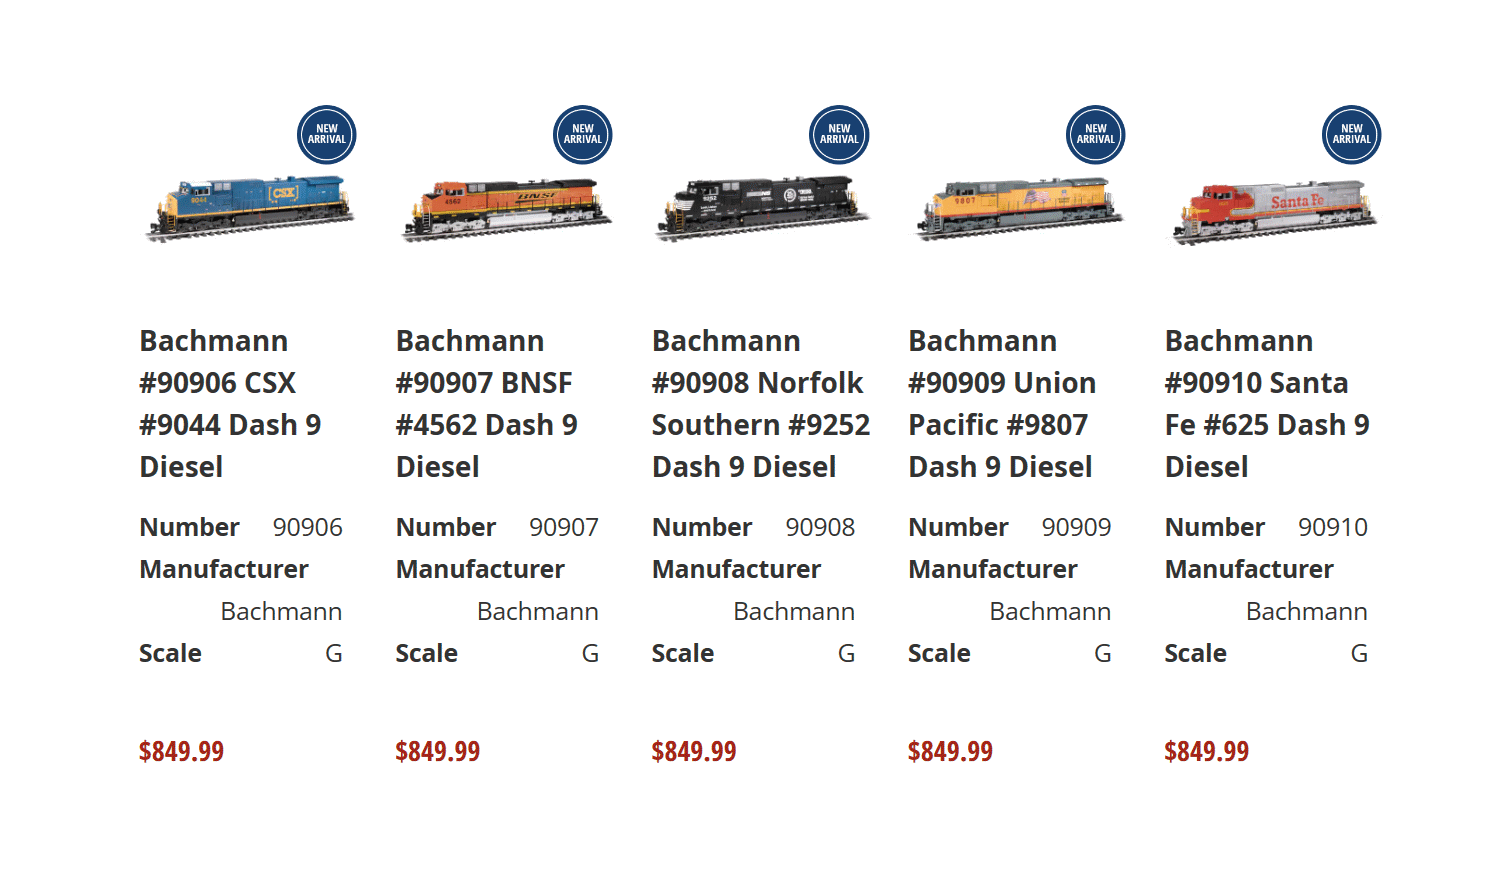 Alle neuen Artikel der Dash 9 Modelle von Bachmann finden Sie bei Trainworld wenn Sie auf das obige Bild klicken. Hier sind nun die weiteren Modelle mit einer zweiten Nummer abgebildet. 